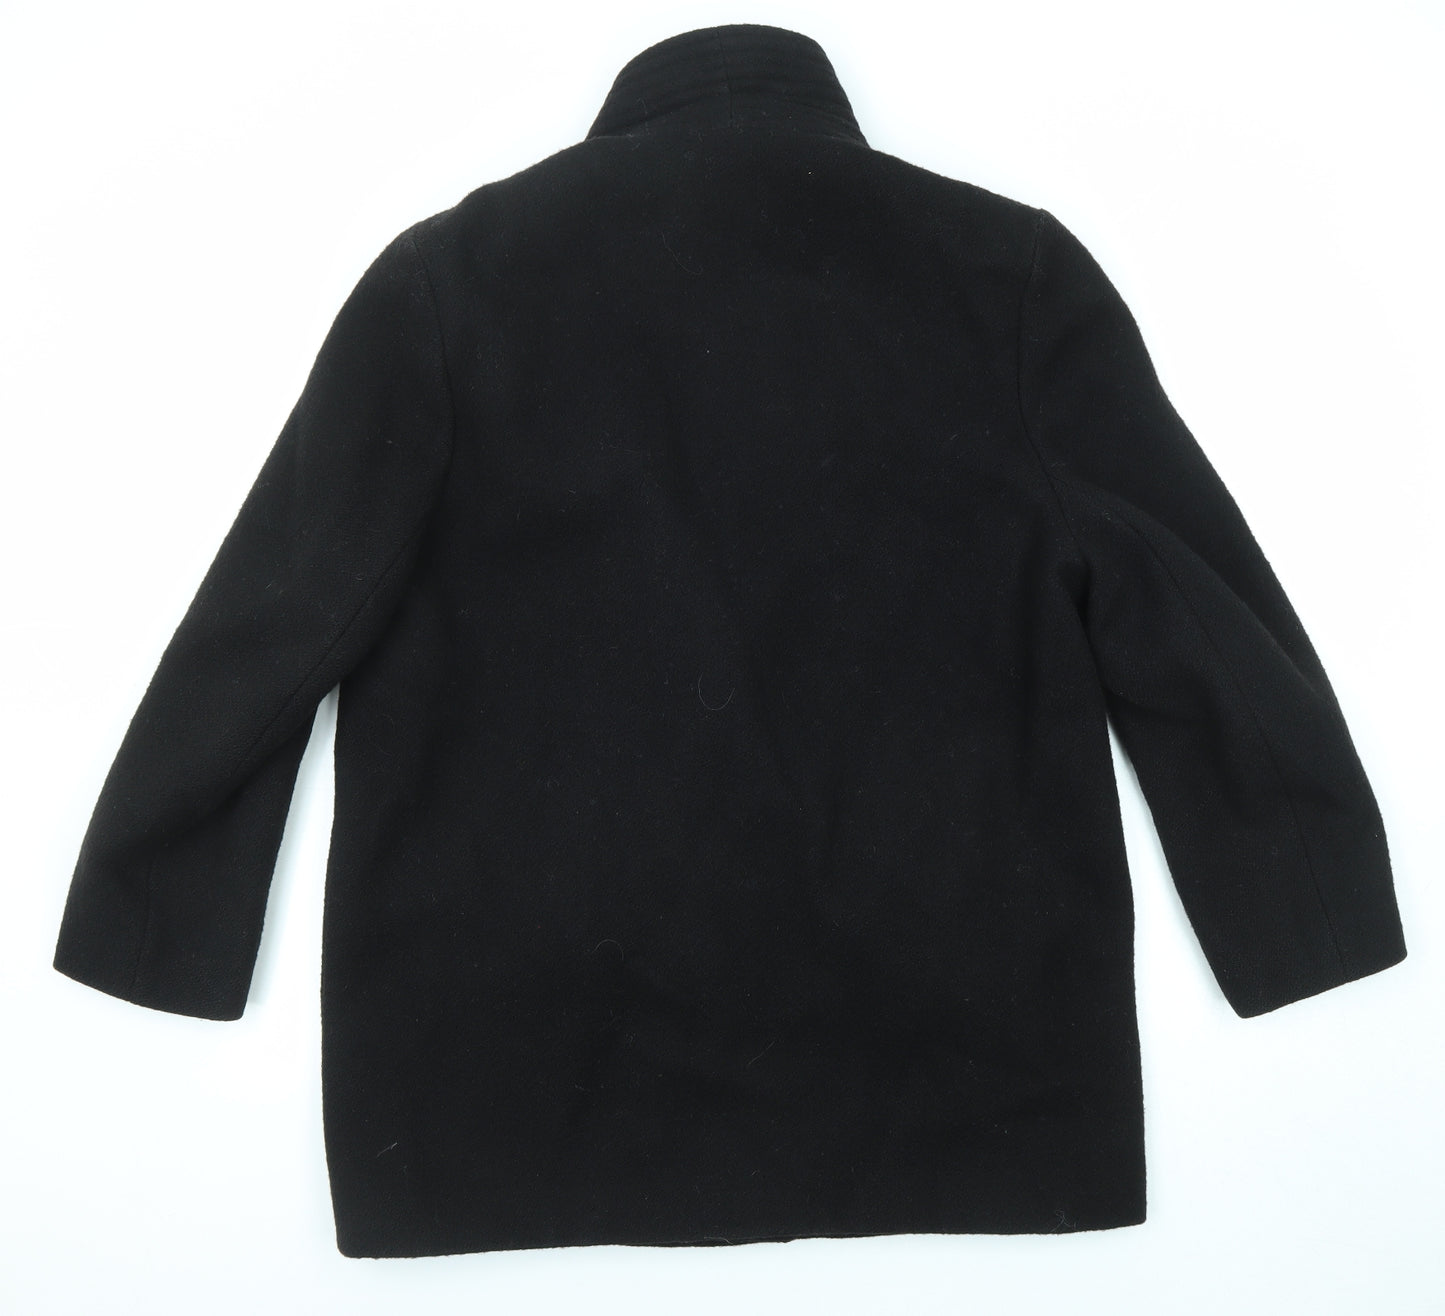 Classics Womens Black Pea Coat Coat Size 16 Button